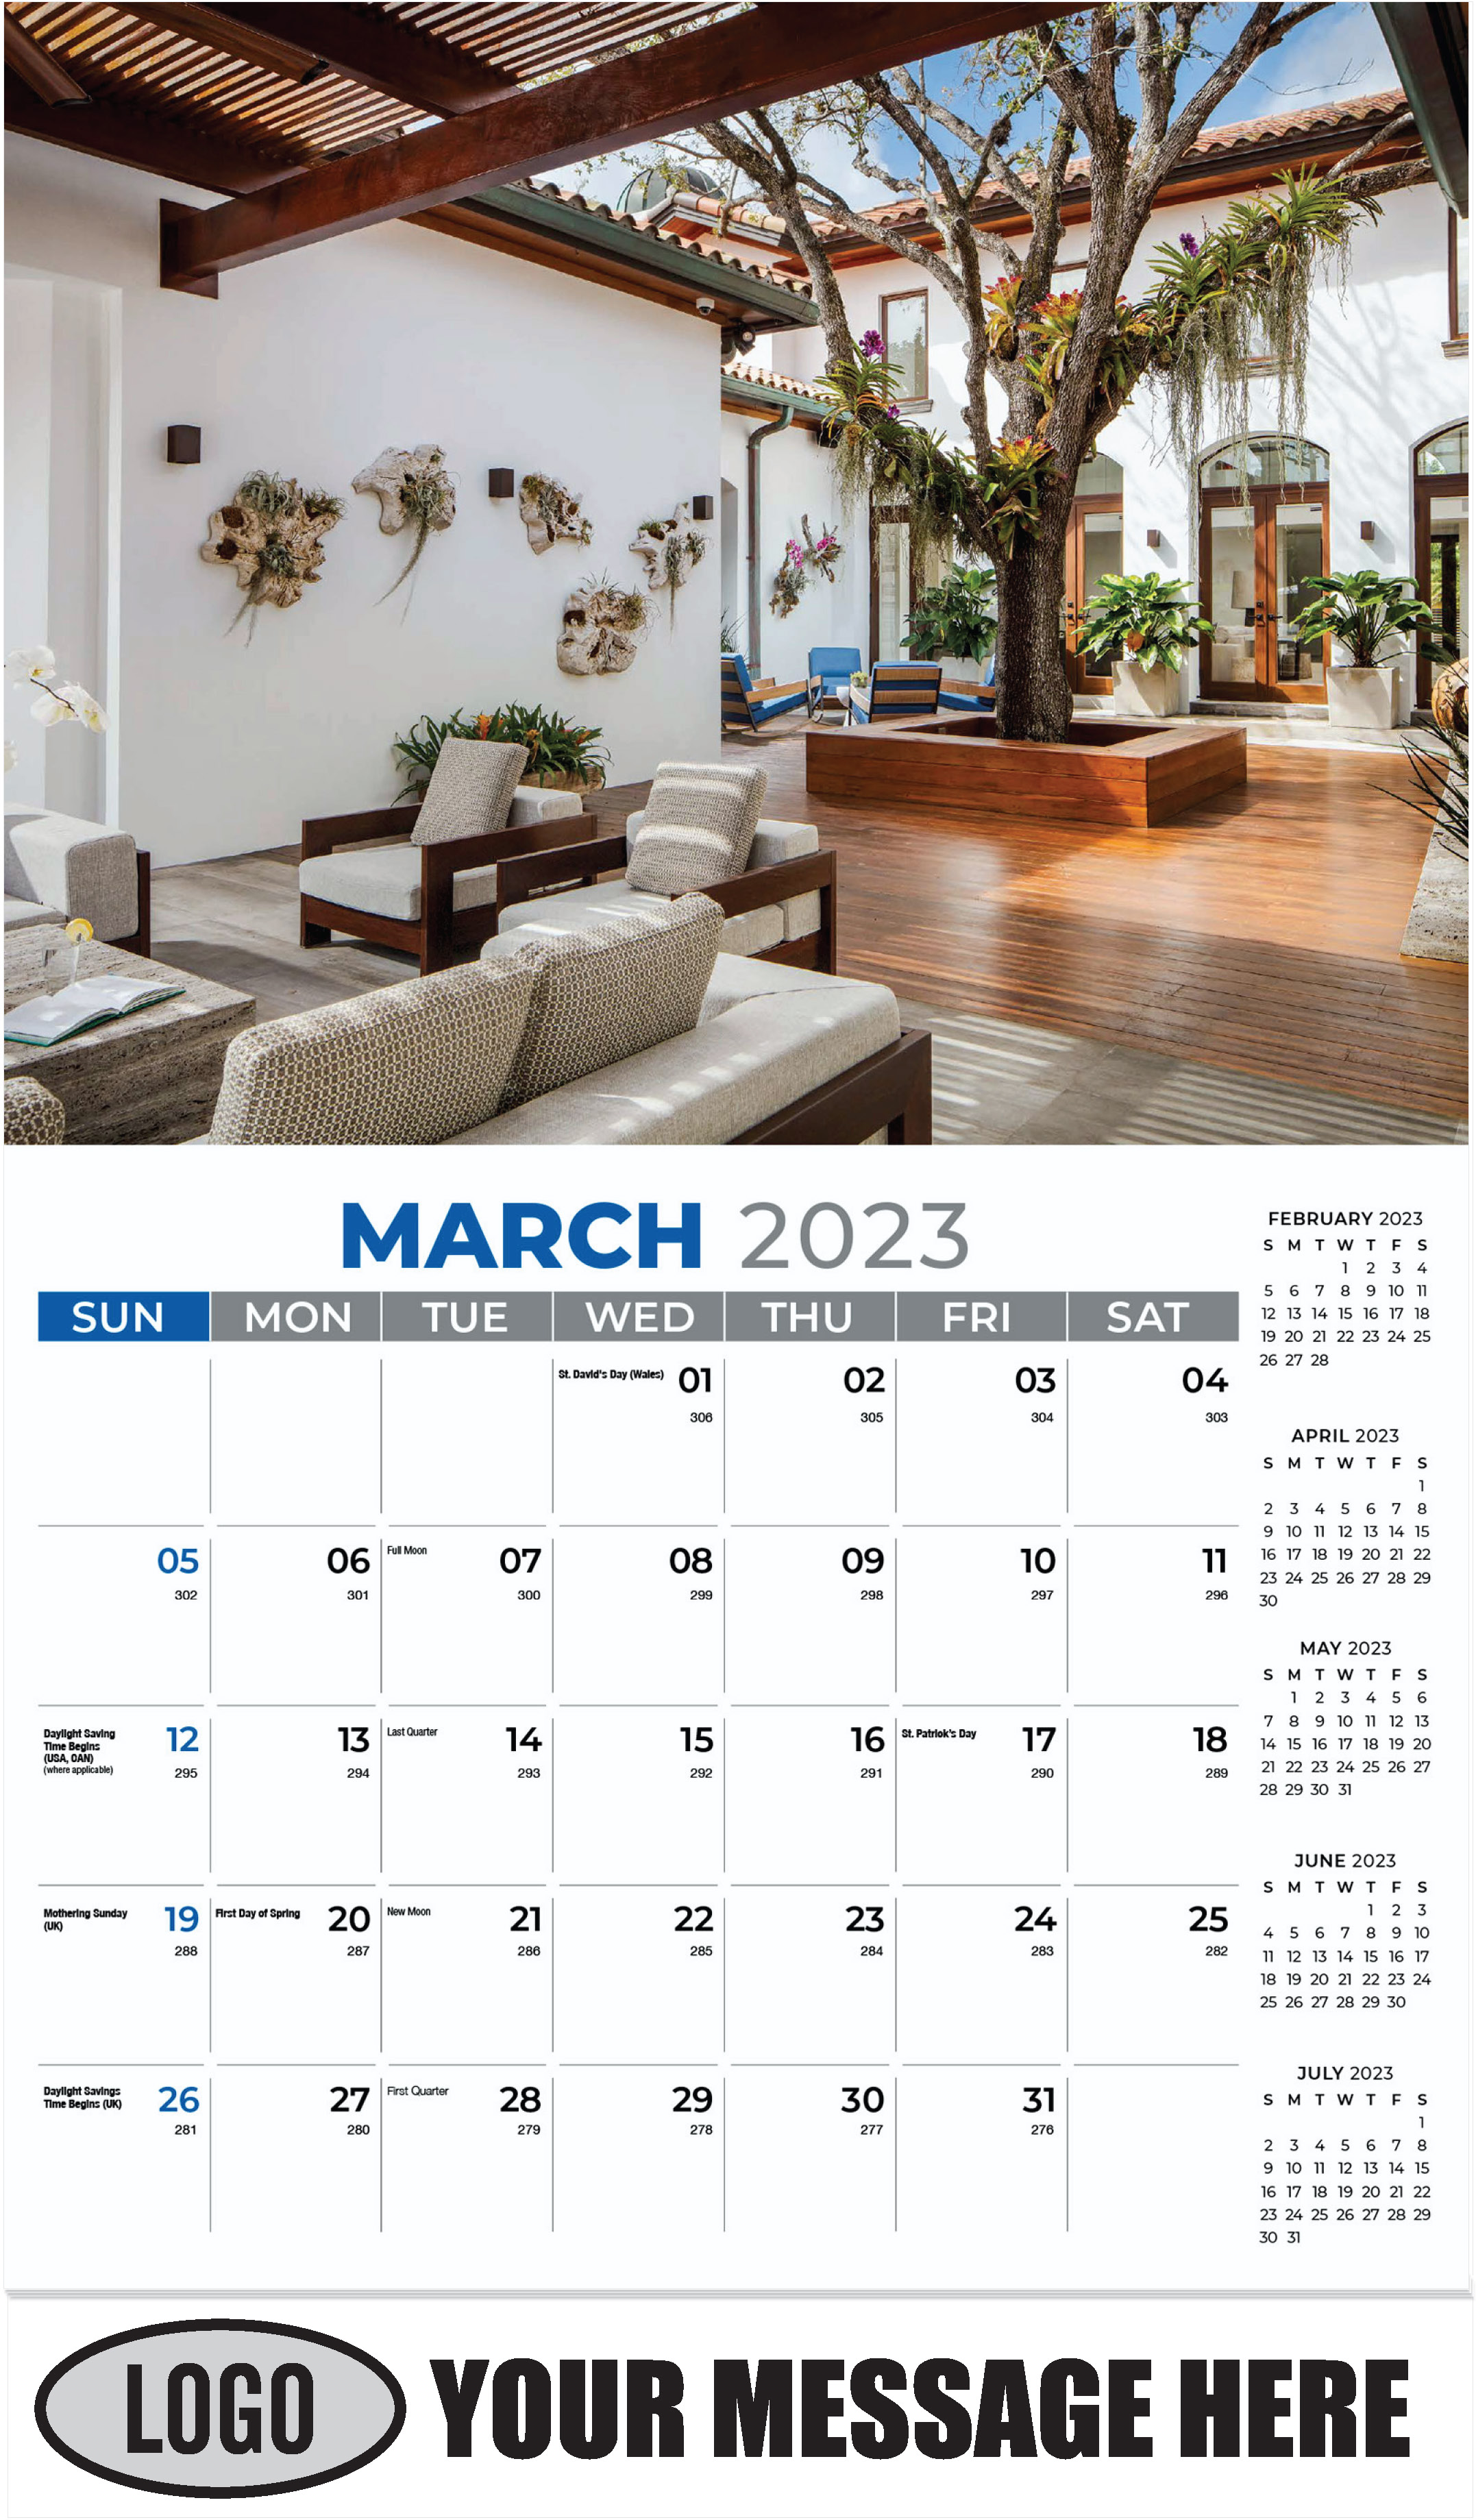 March - Décor & Design 2023 Promotional Calendar